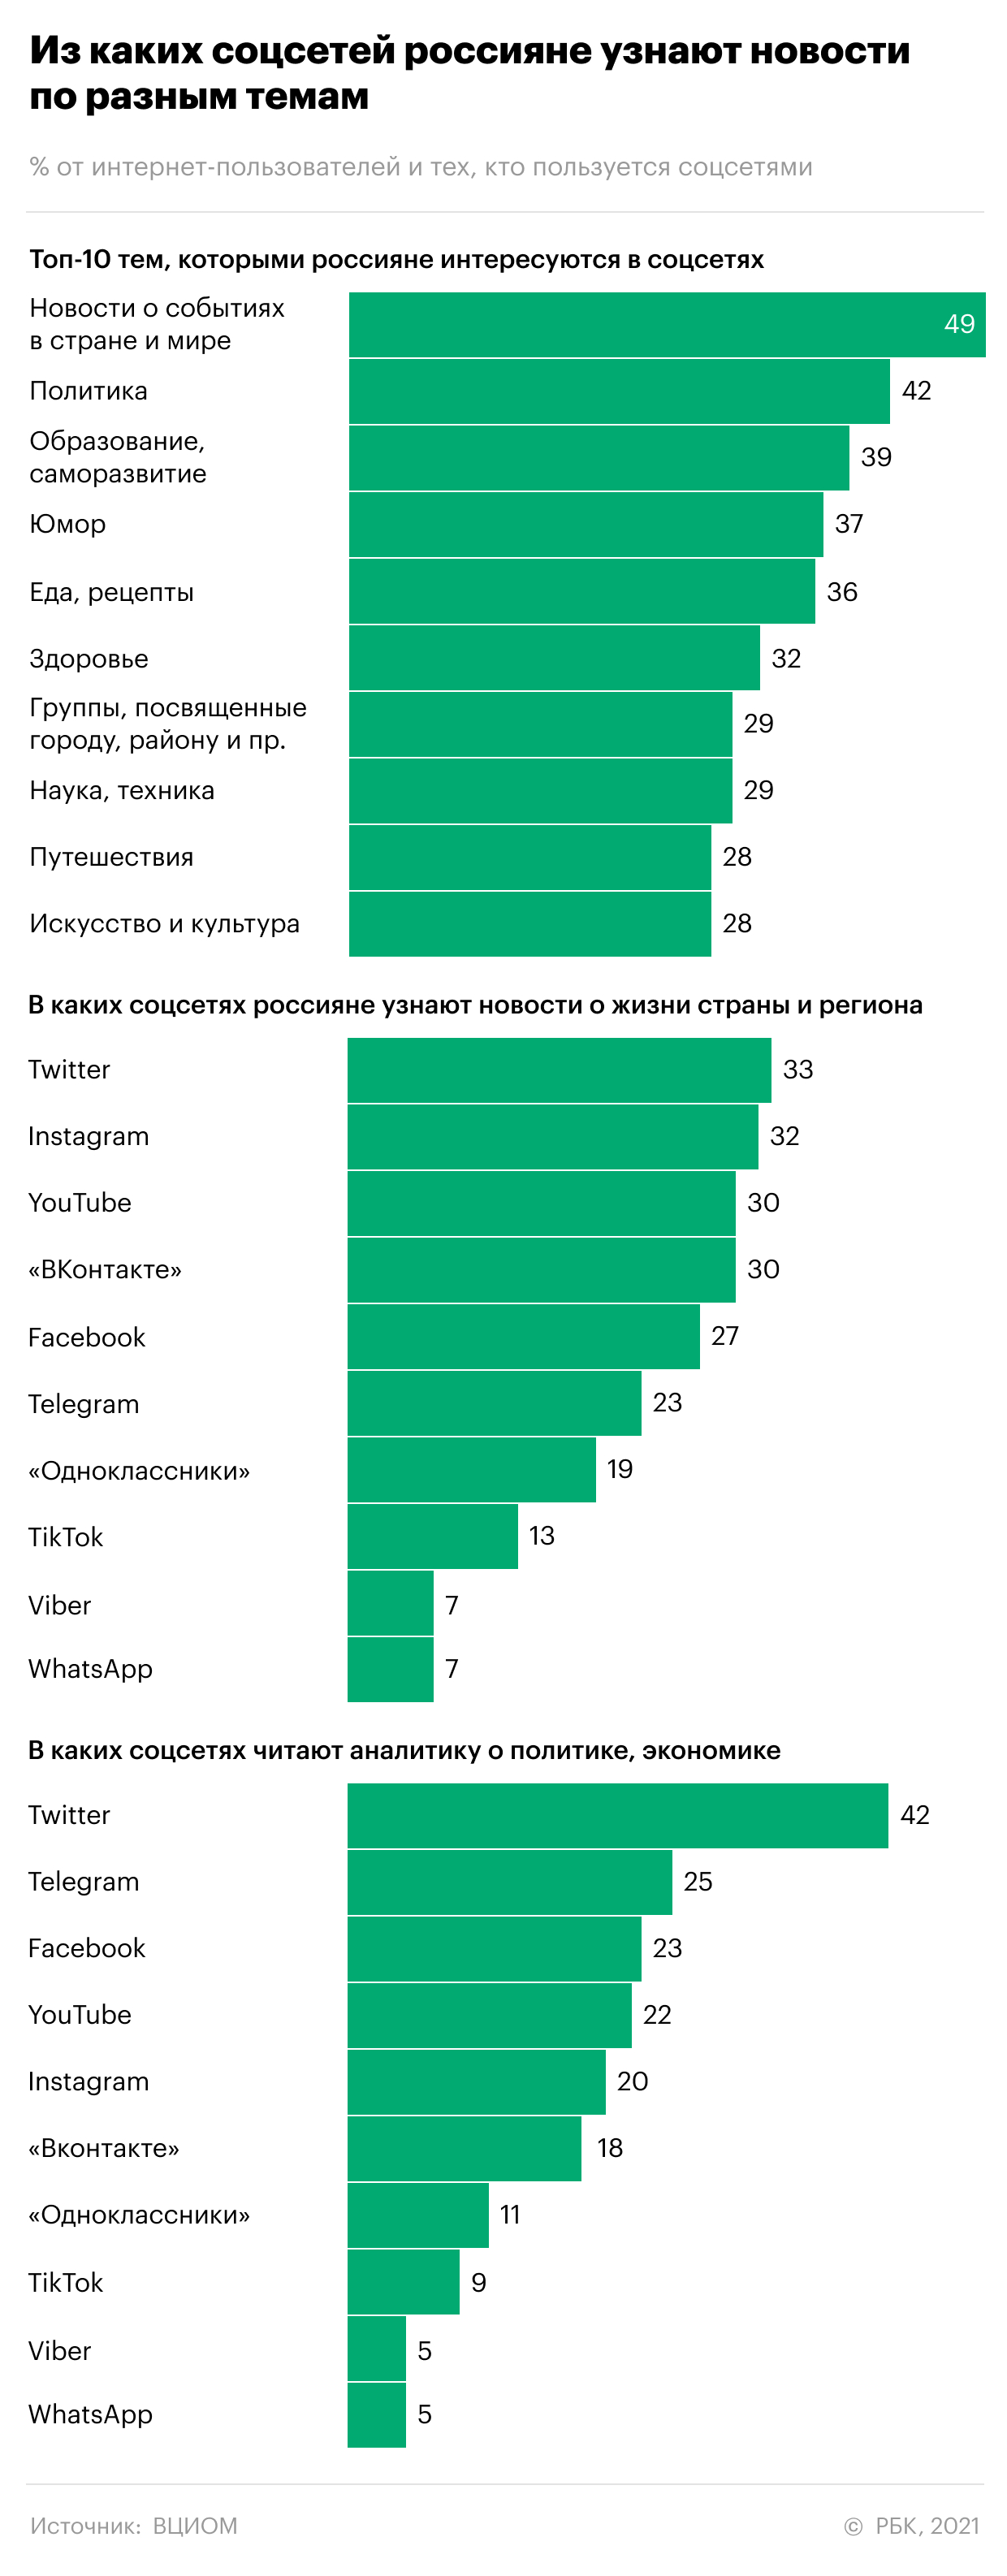 Где и как россияне узнают новости. Инфографика